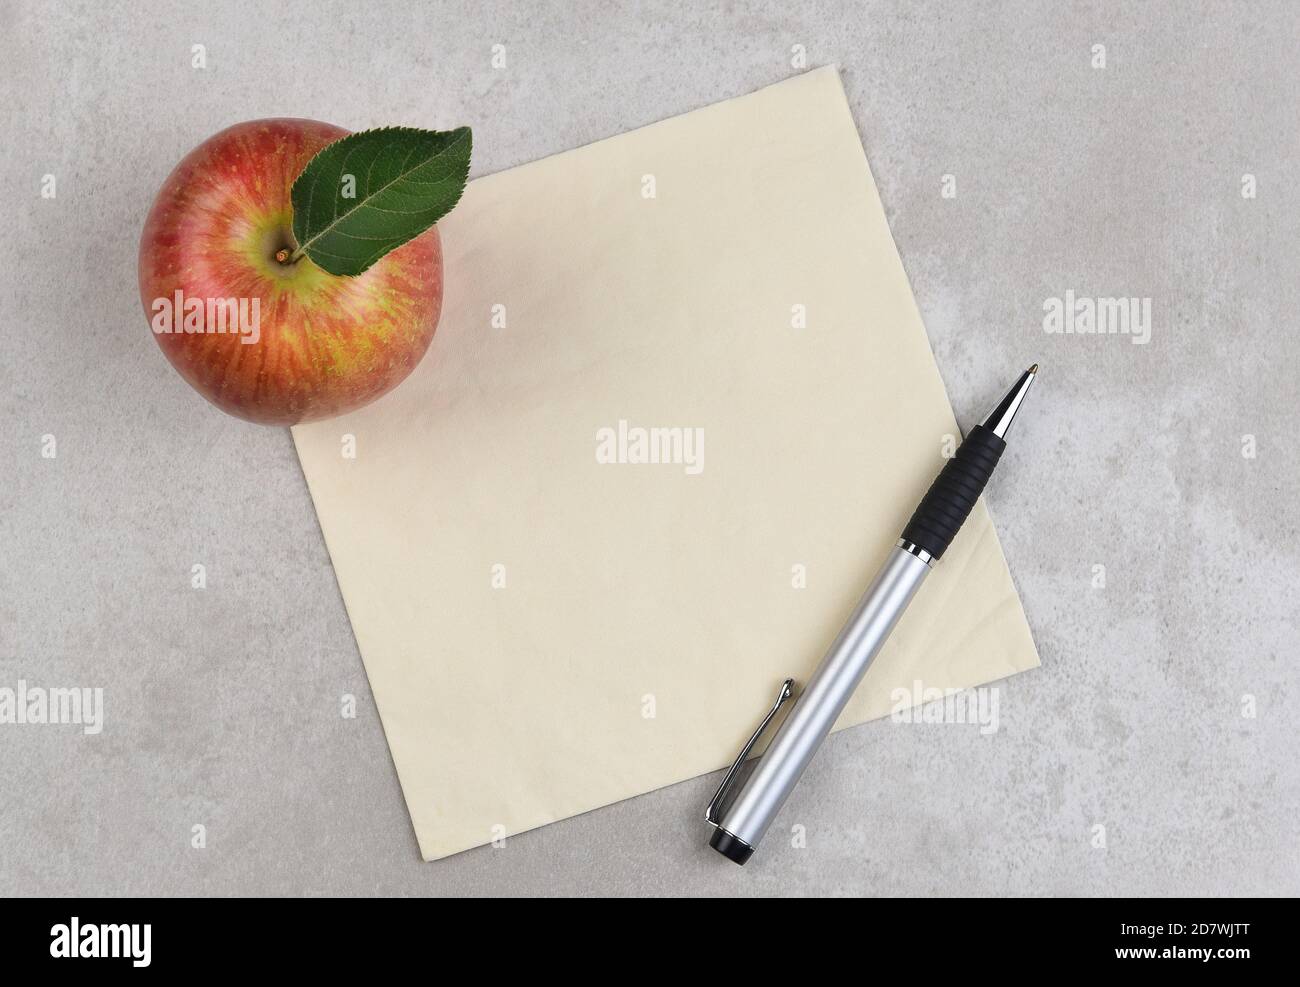 Una mela, una penna e un tovagliolo su una superficie grigia con macchie. Spazio per la copia o il doodle sul tovagliolo. Foto Stock